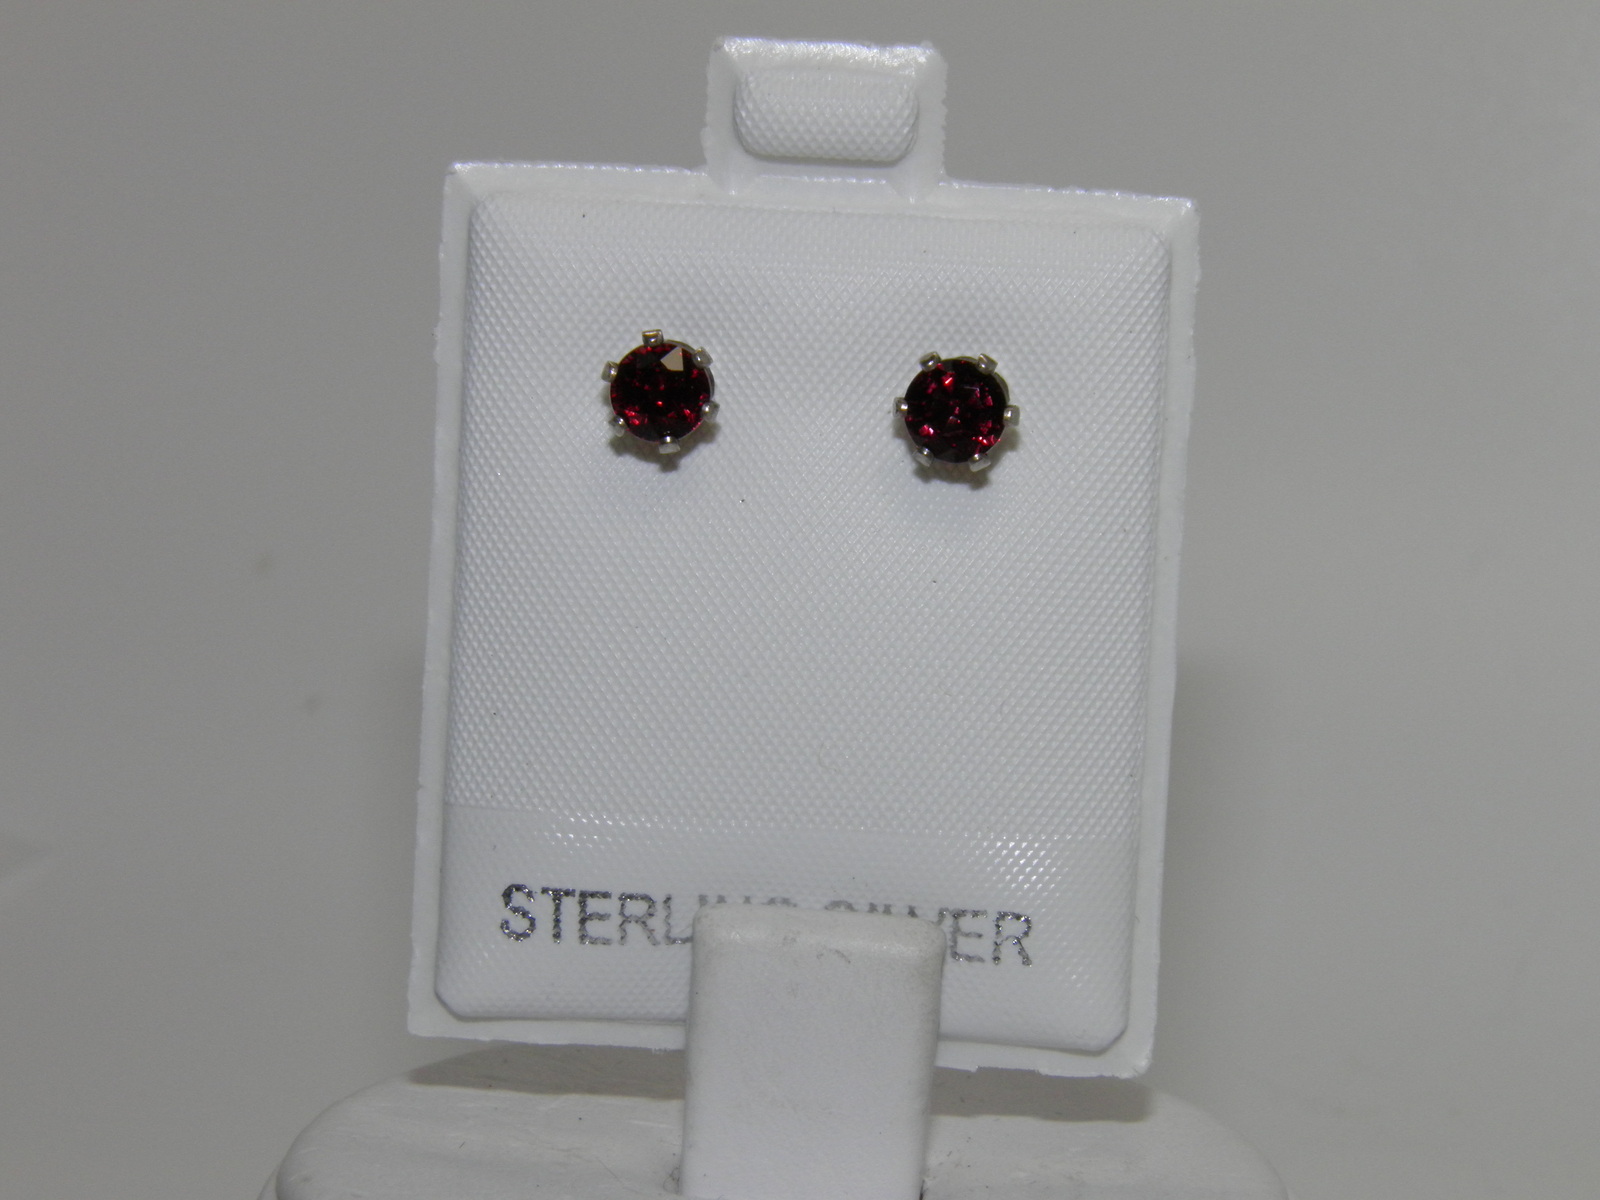 New Sterling Silver stud earrings ~ 1.50ctw Rhodolite Garnets 5mm